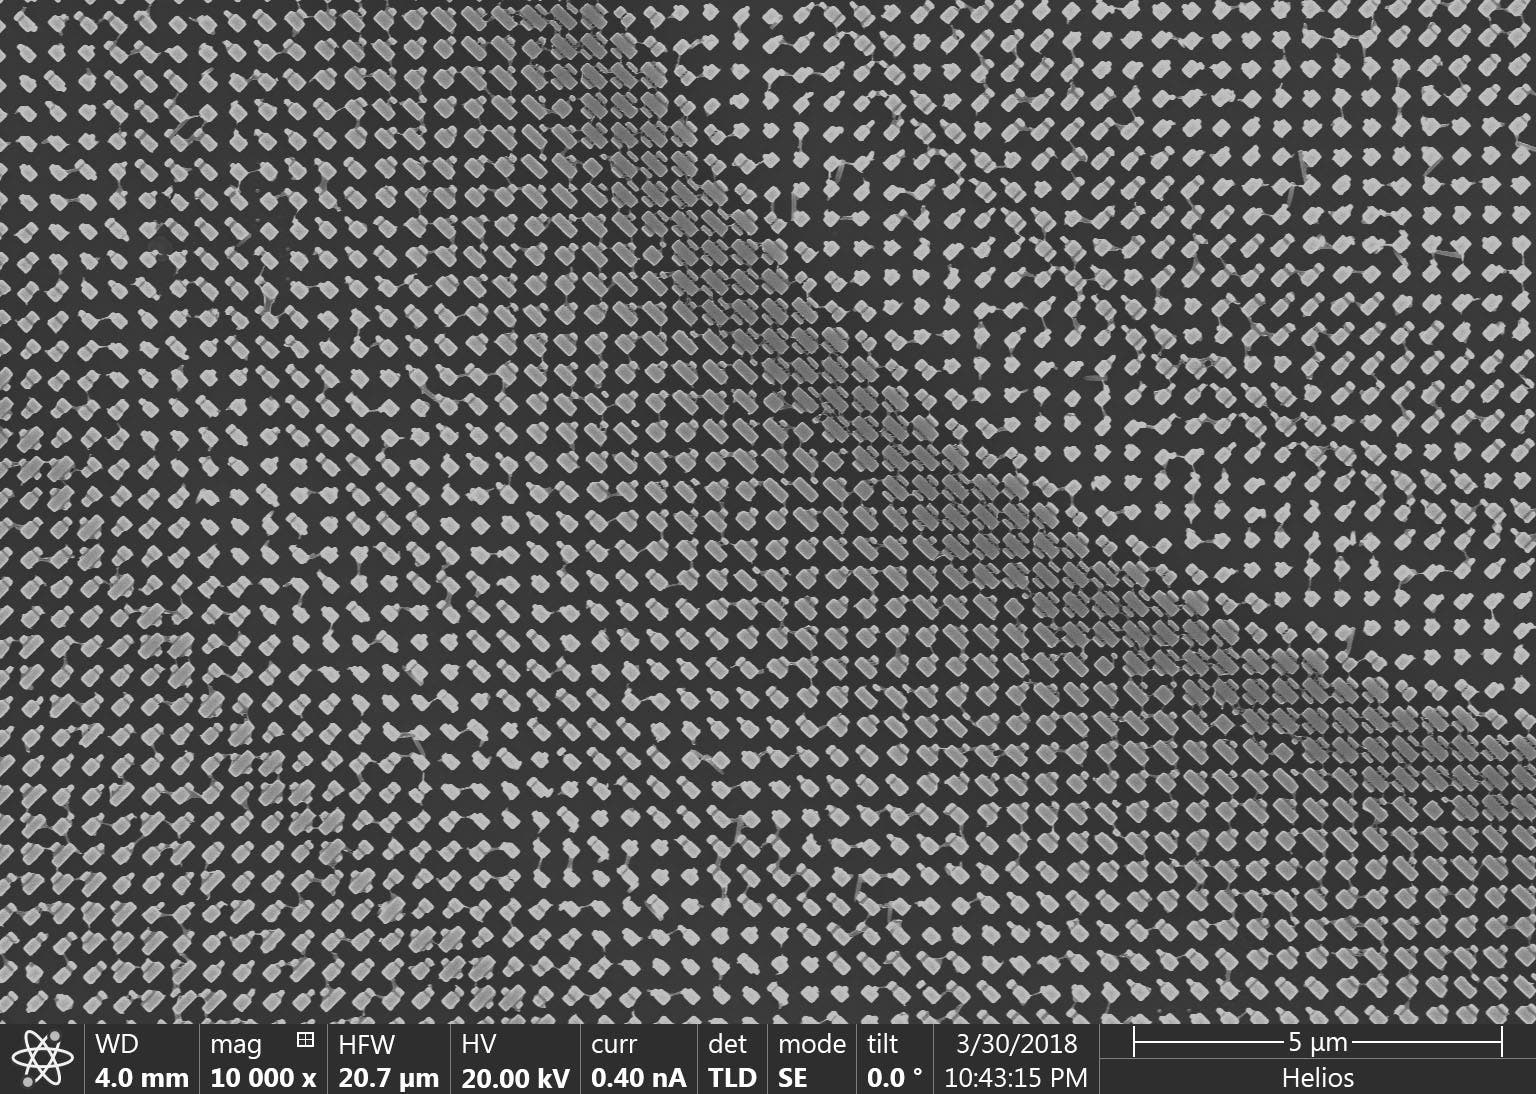 Rasterelektronenmikroskopische Aufnahme mit einem Teil der Metalinse mit zahlreichen Nanostrukturen